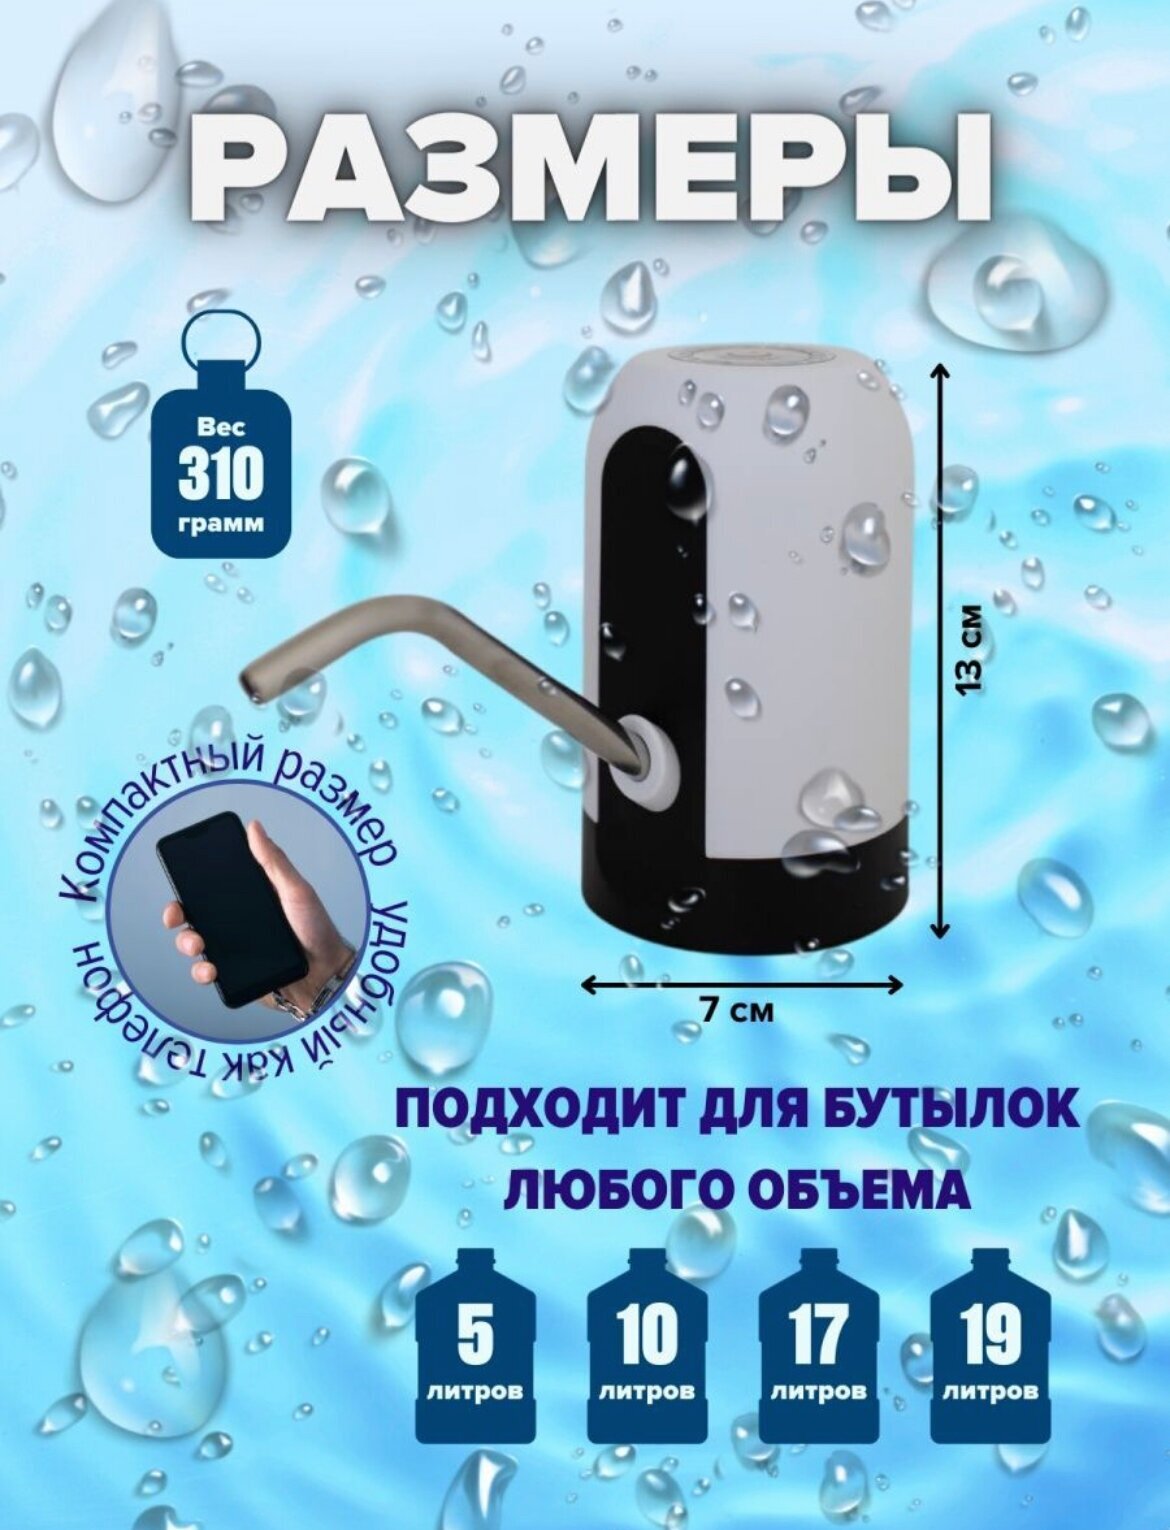 Помпа для воды автоматическая/аккумуляторный насос на кулер для воды, 1200mAh - фотография № 5